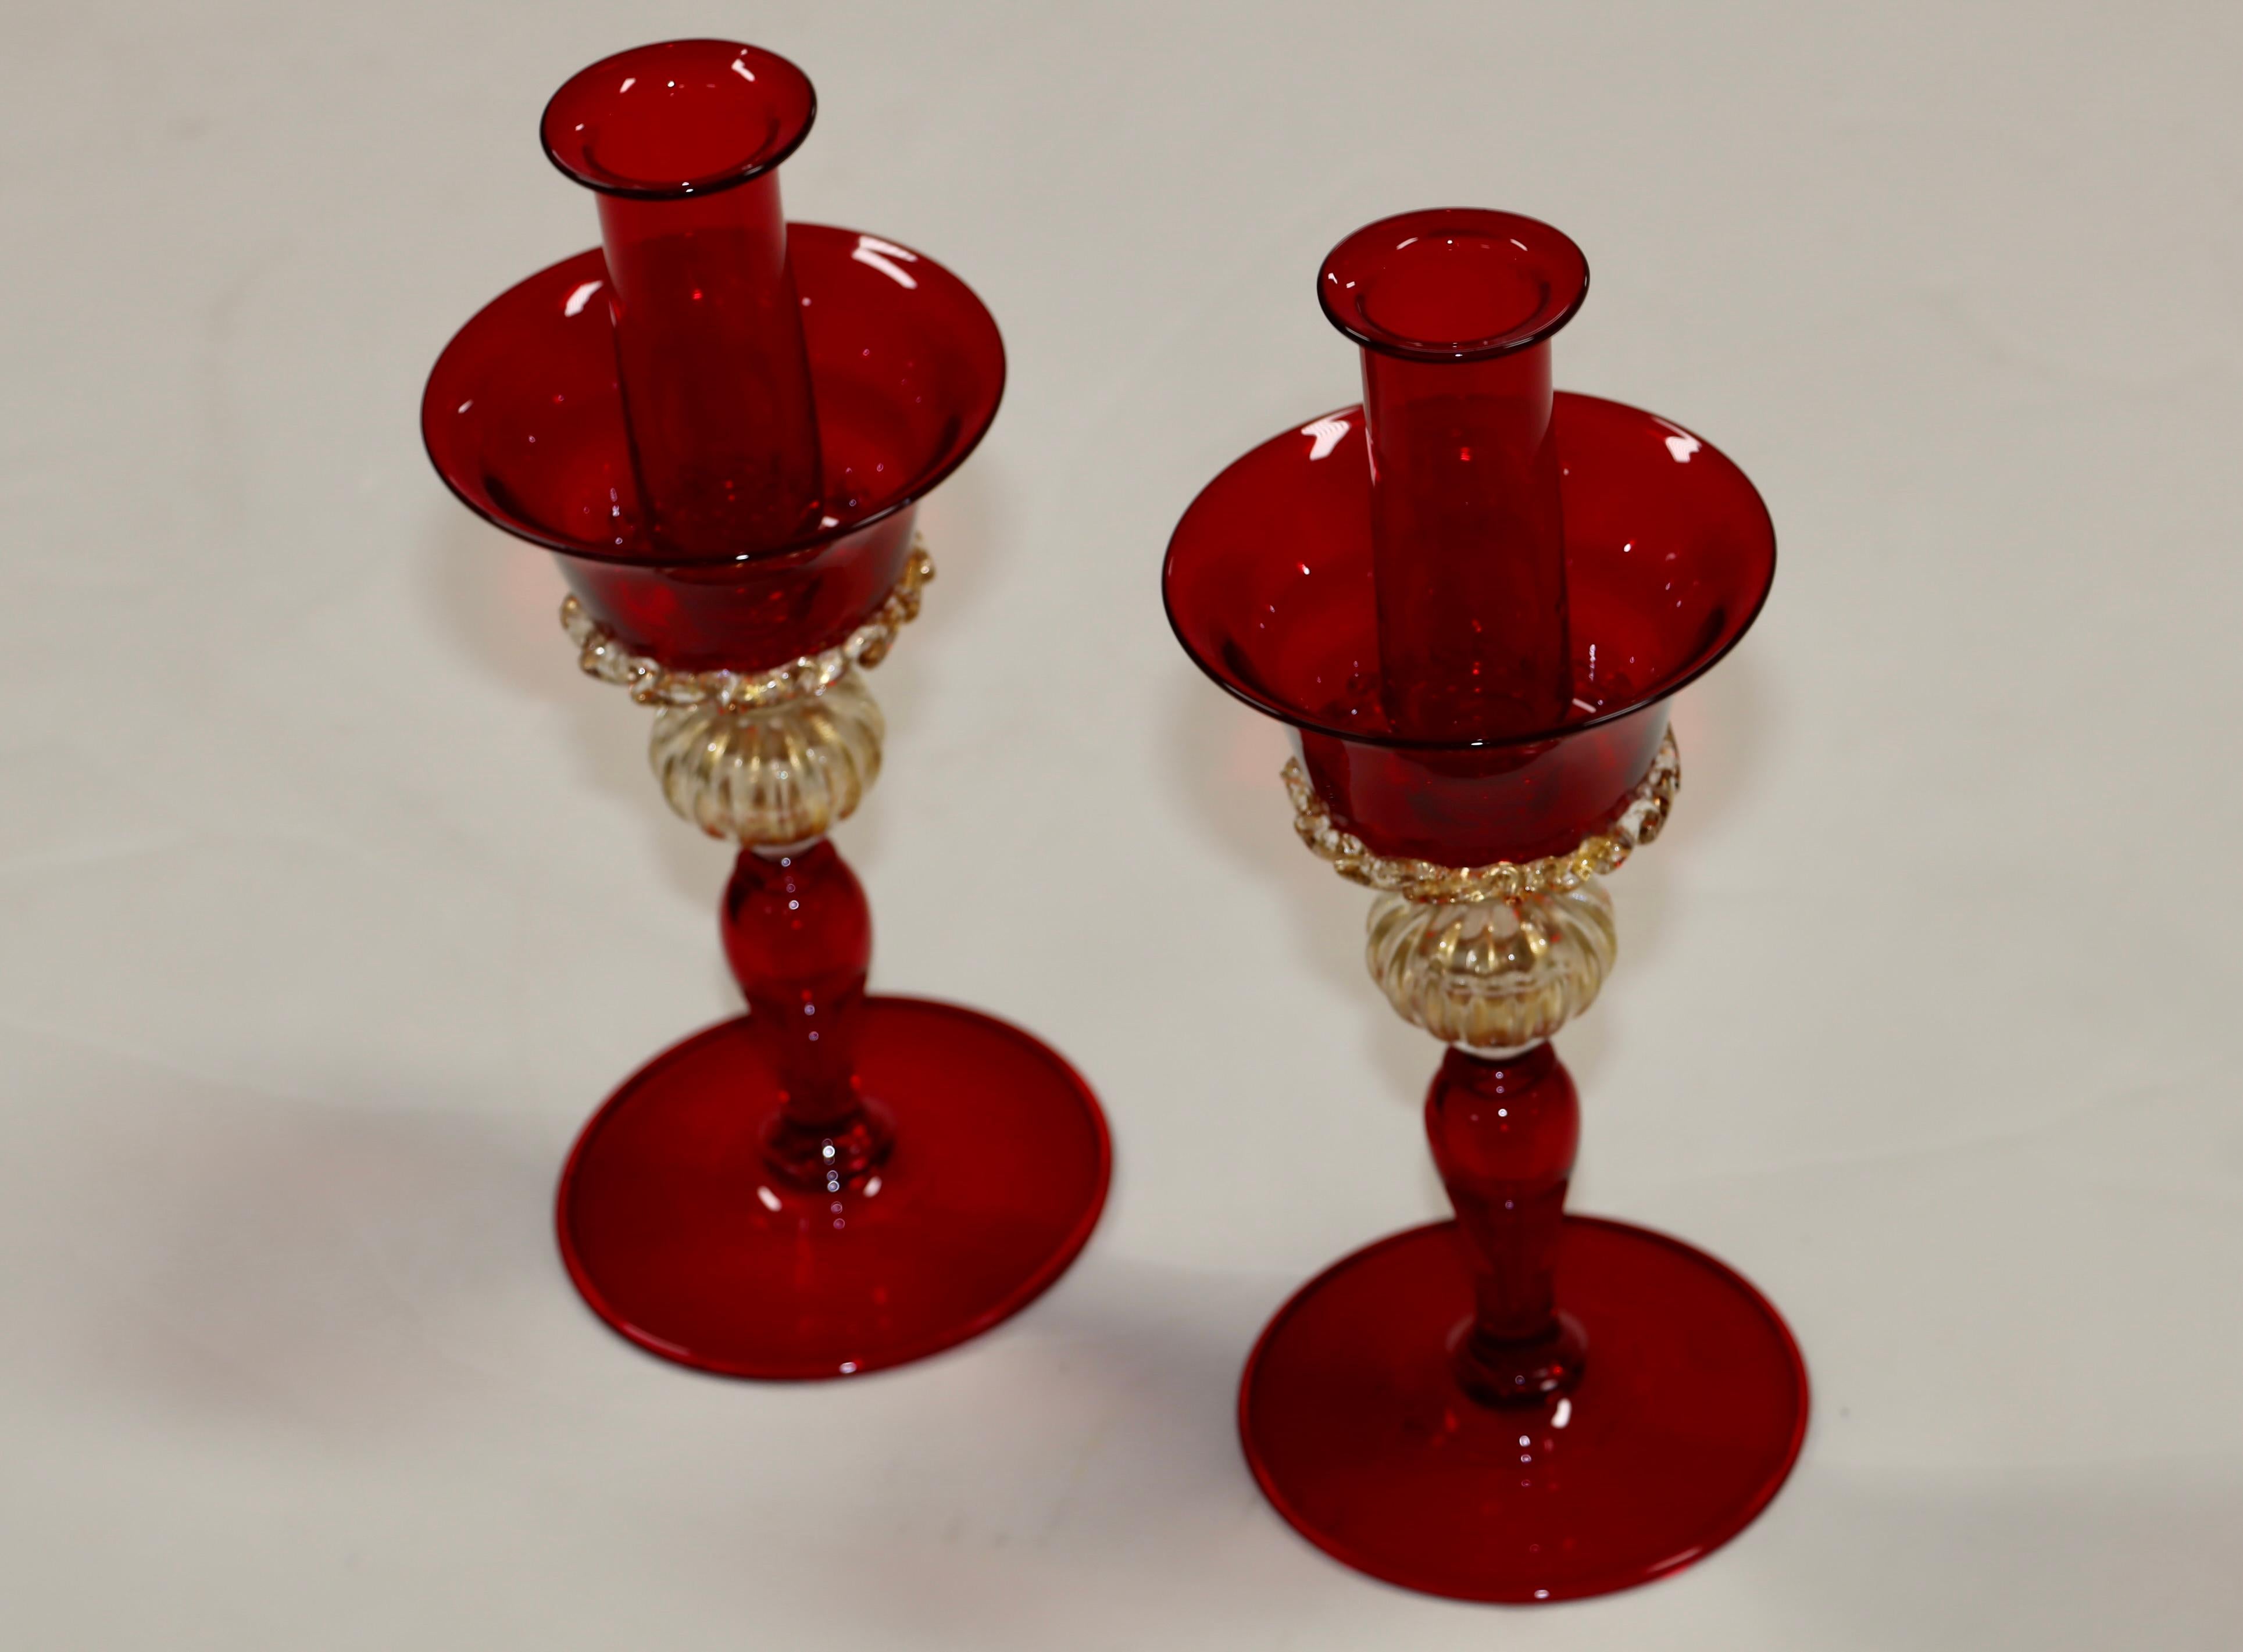 Magnifique paire de bougeoirs modernes des années 1970 en verre de Murano rouge et or signés, en état d'origine vintage avec une usure et une patine mineures dues à l'âge et à l'utilisation.